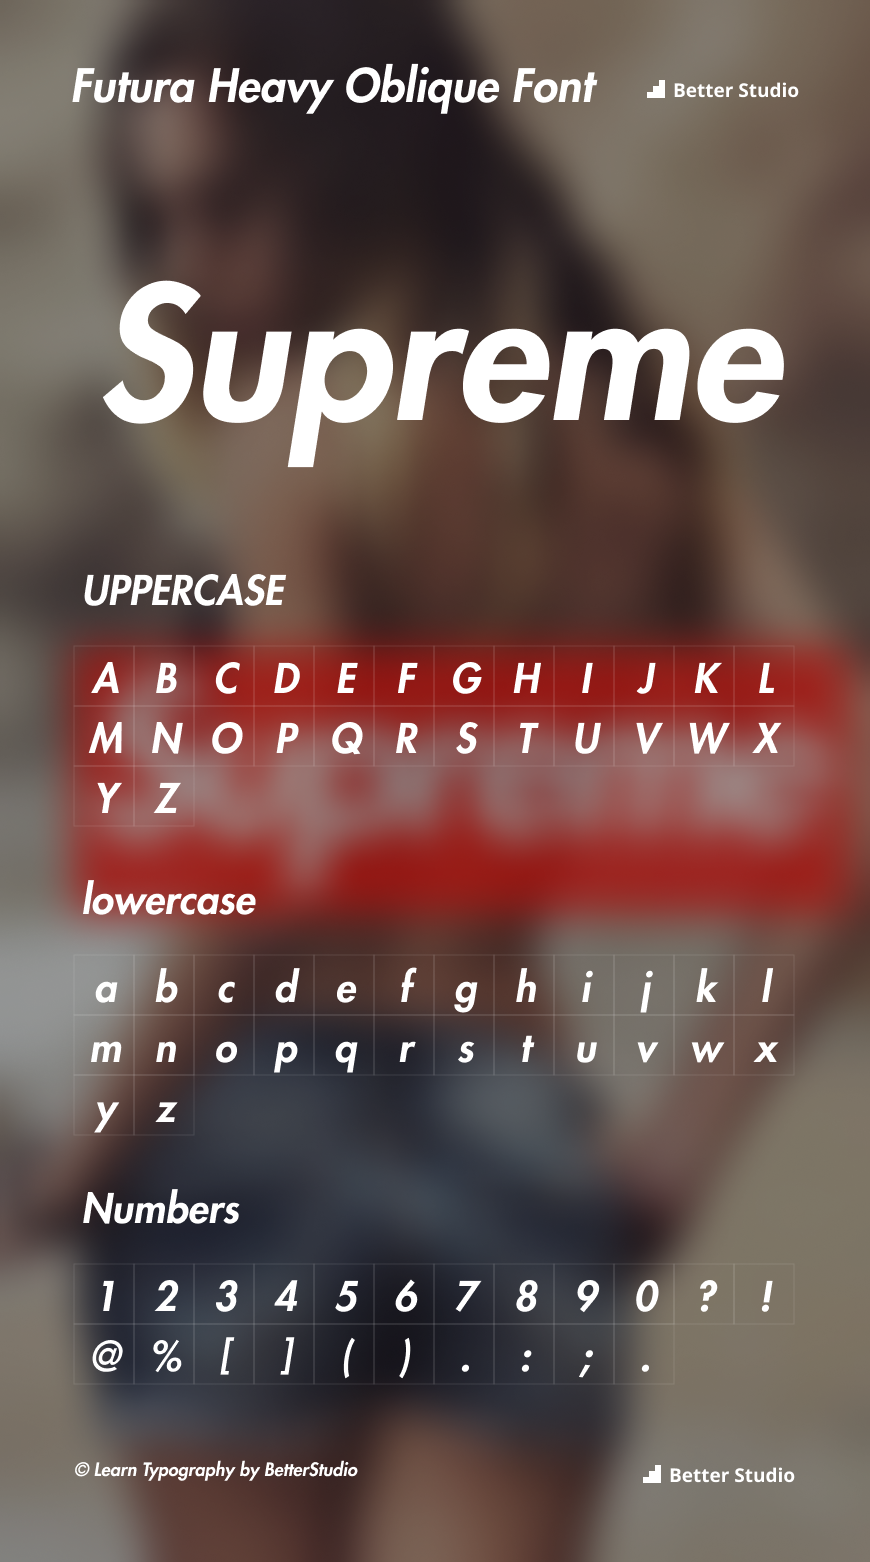 Supreme Font is → Futura